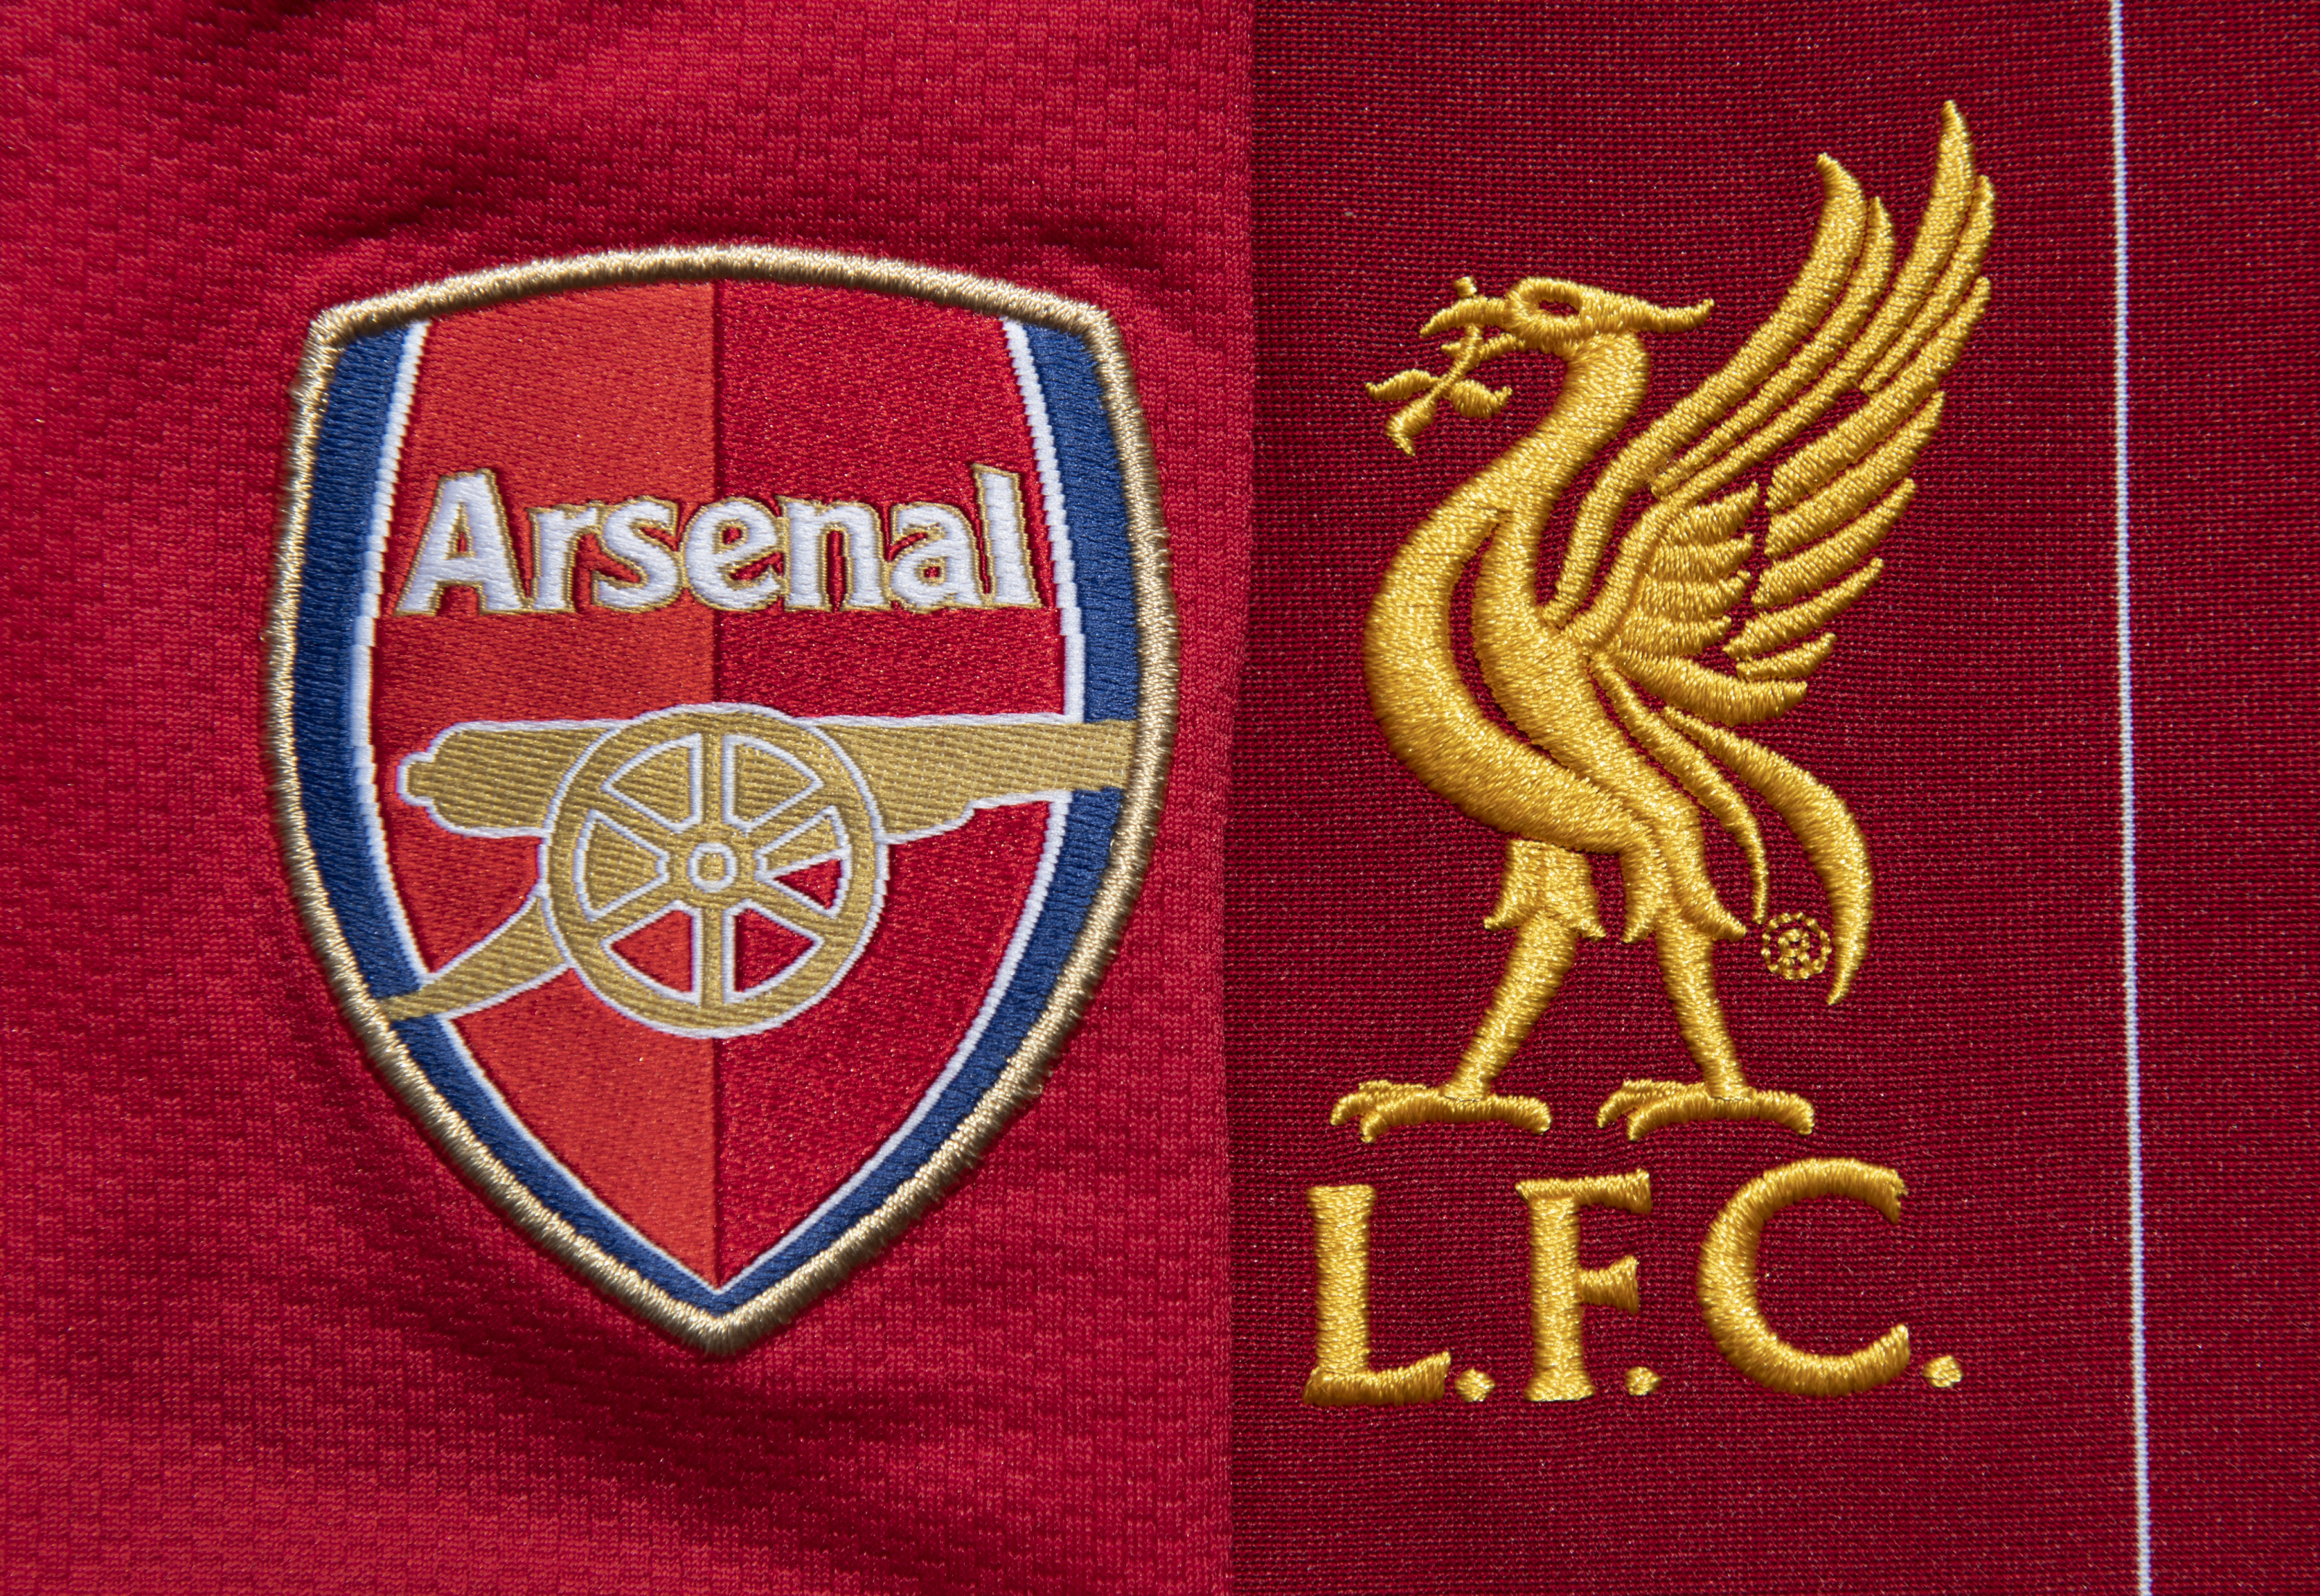 Arsenal vs Liverpool preview Premier League clash